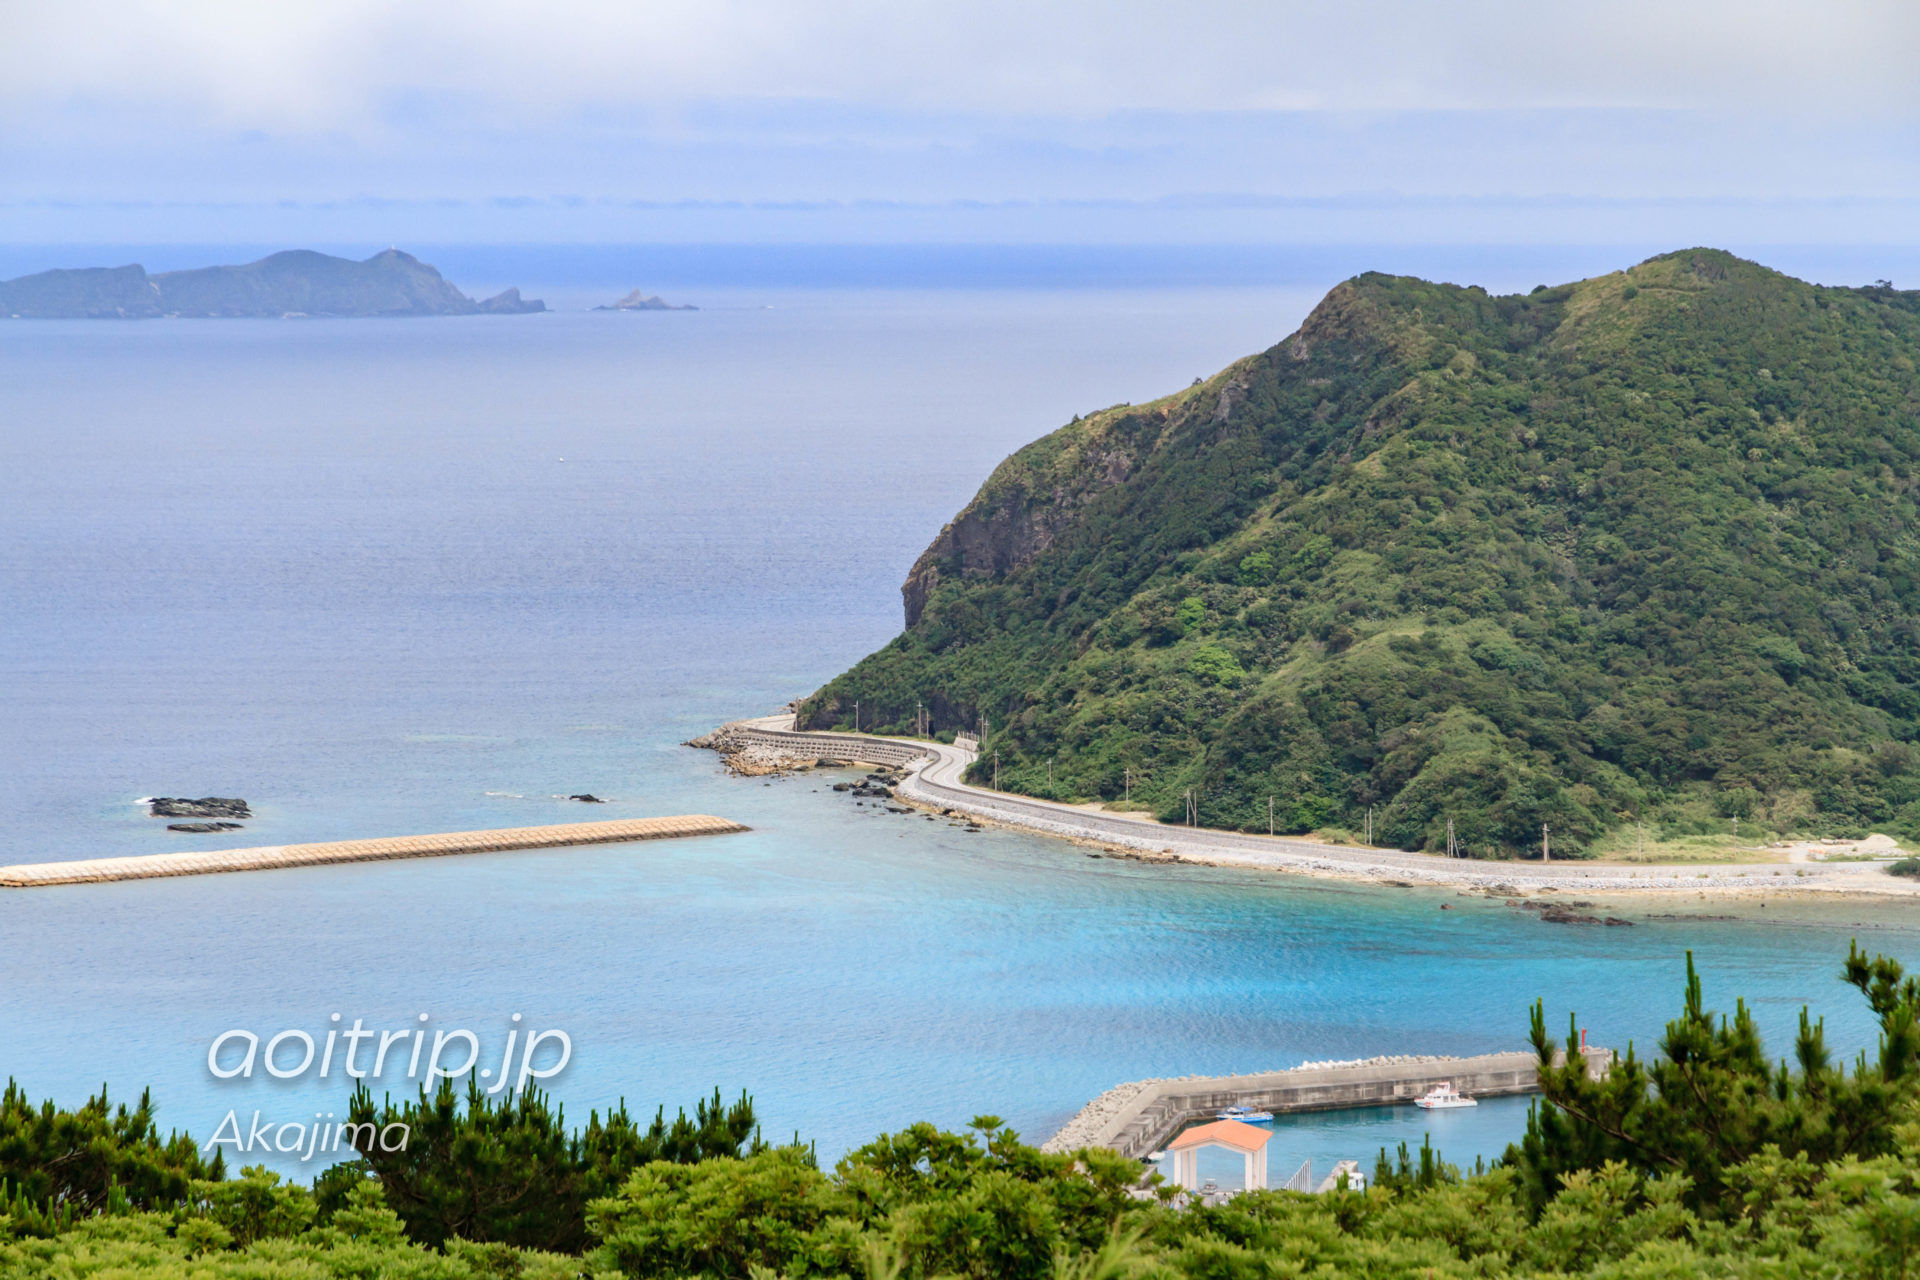 阿嘉島の中岳展望台からの眺望